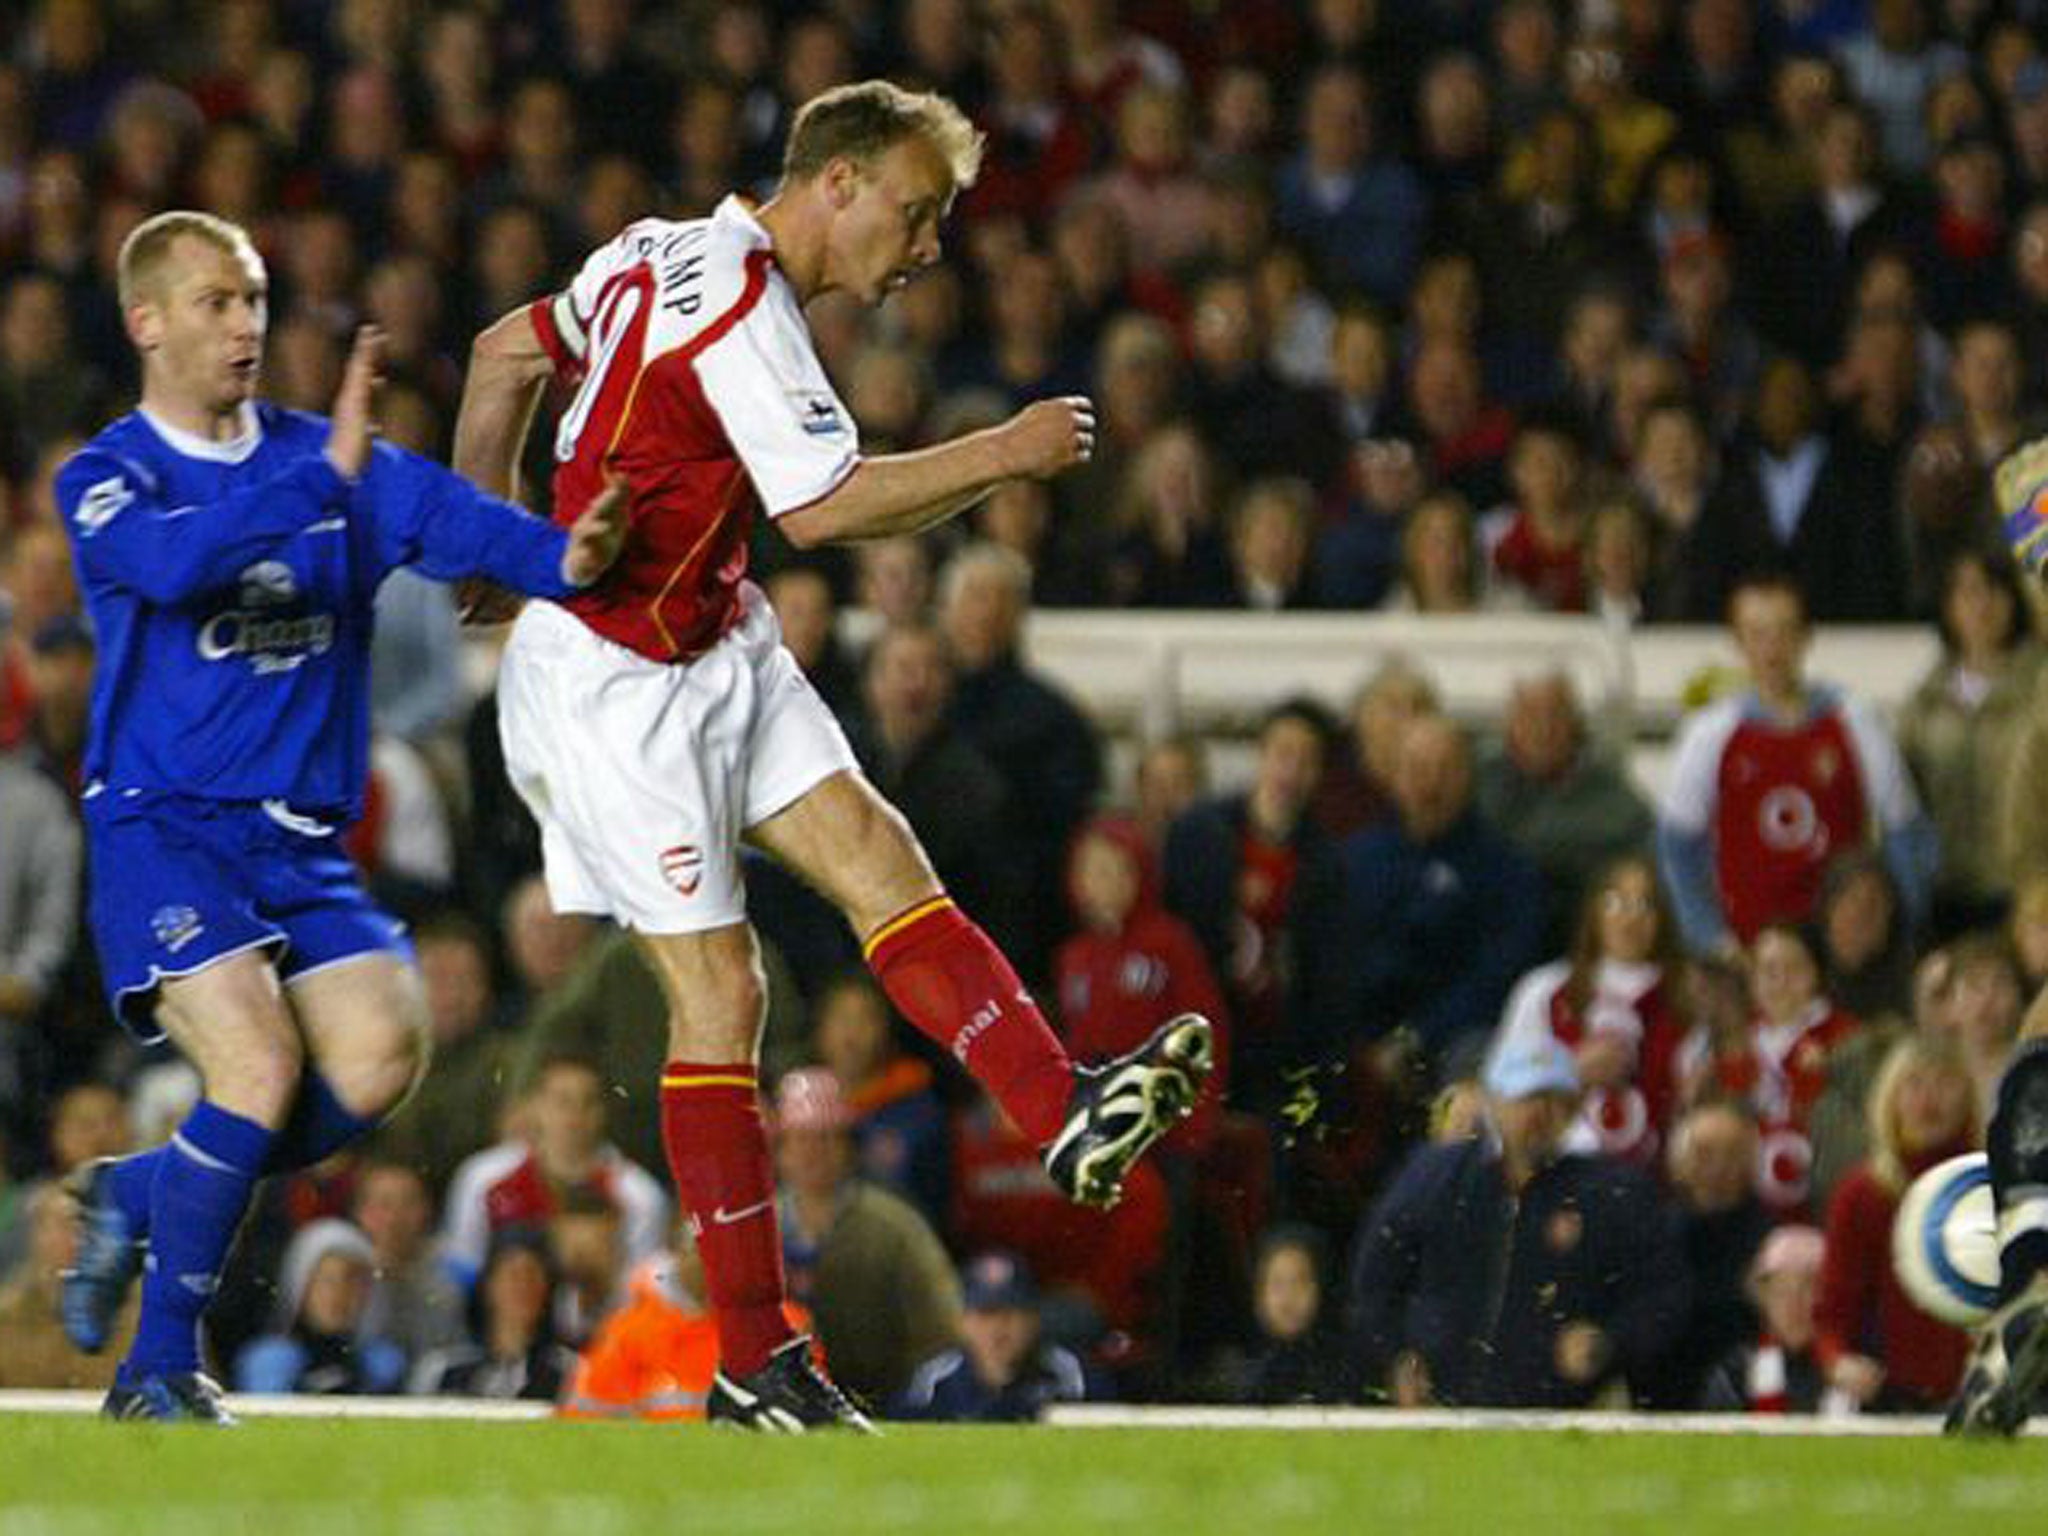 Dennis Bergkamp scores as Arsenal beat Everton 7-0